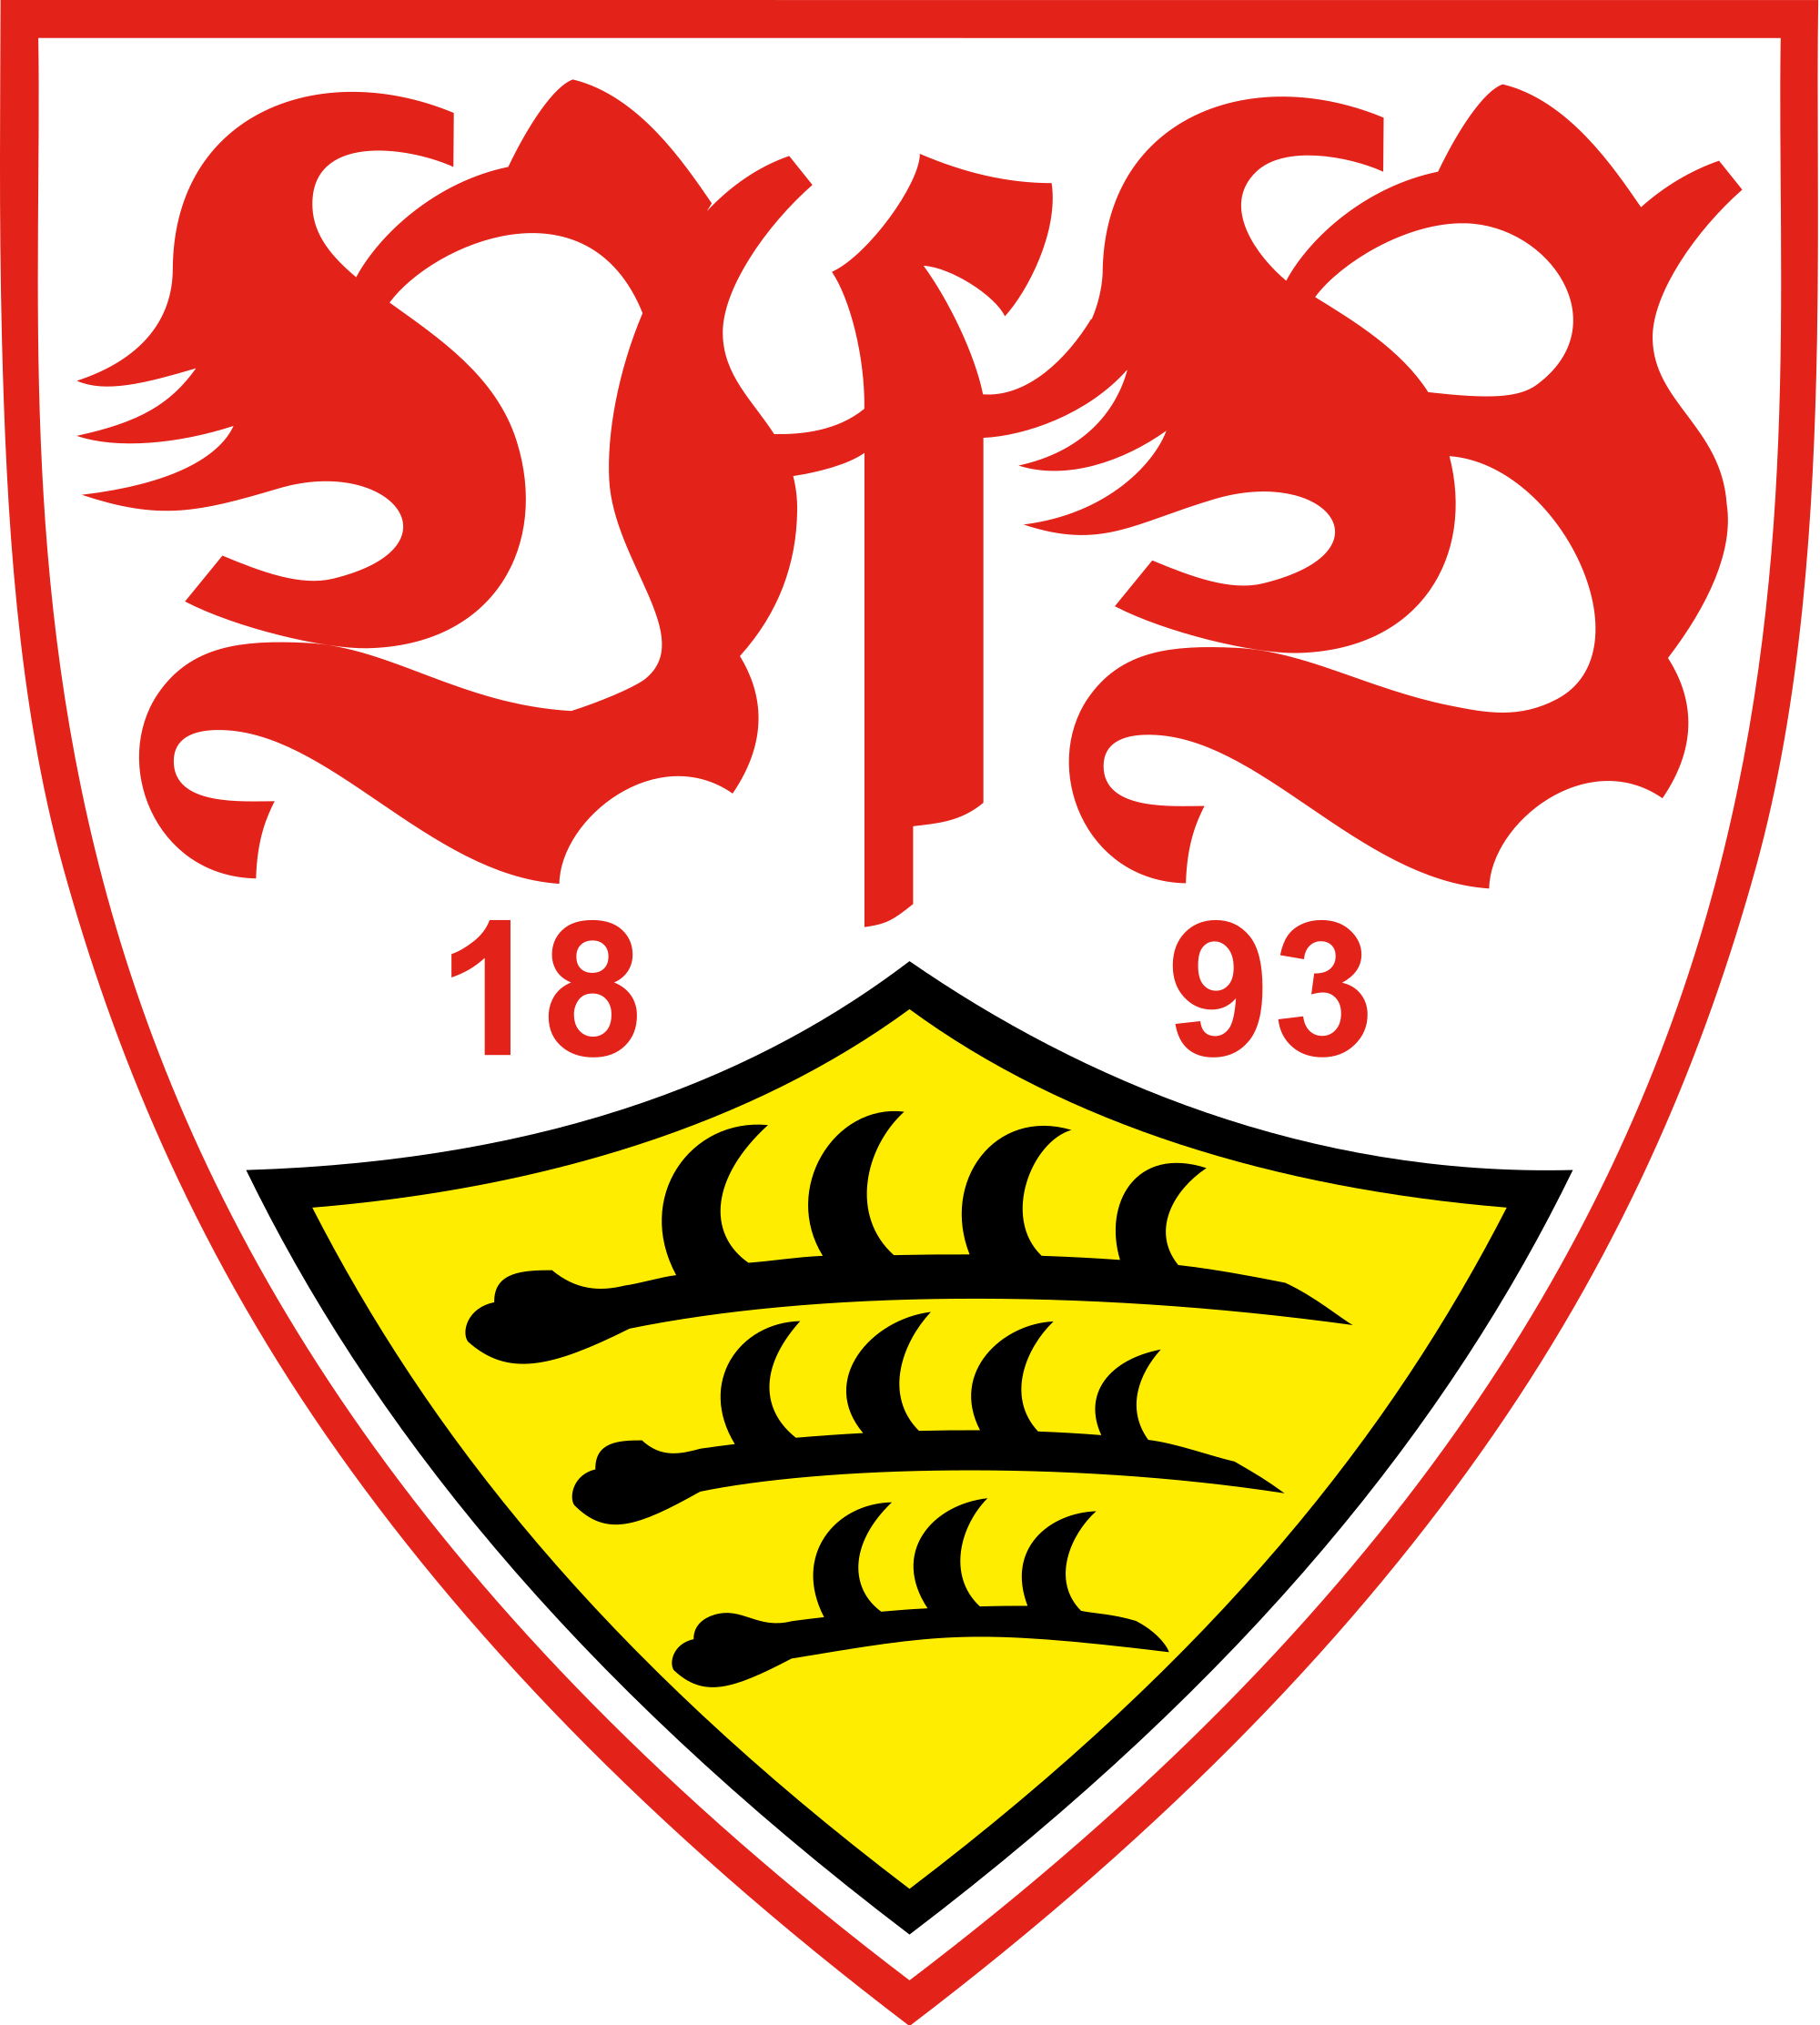 Logo VfB Stuttgart